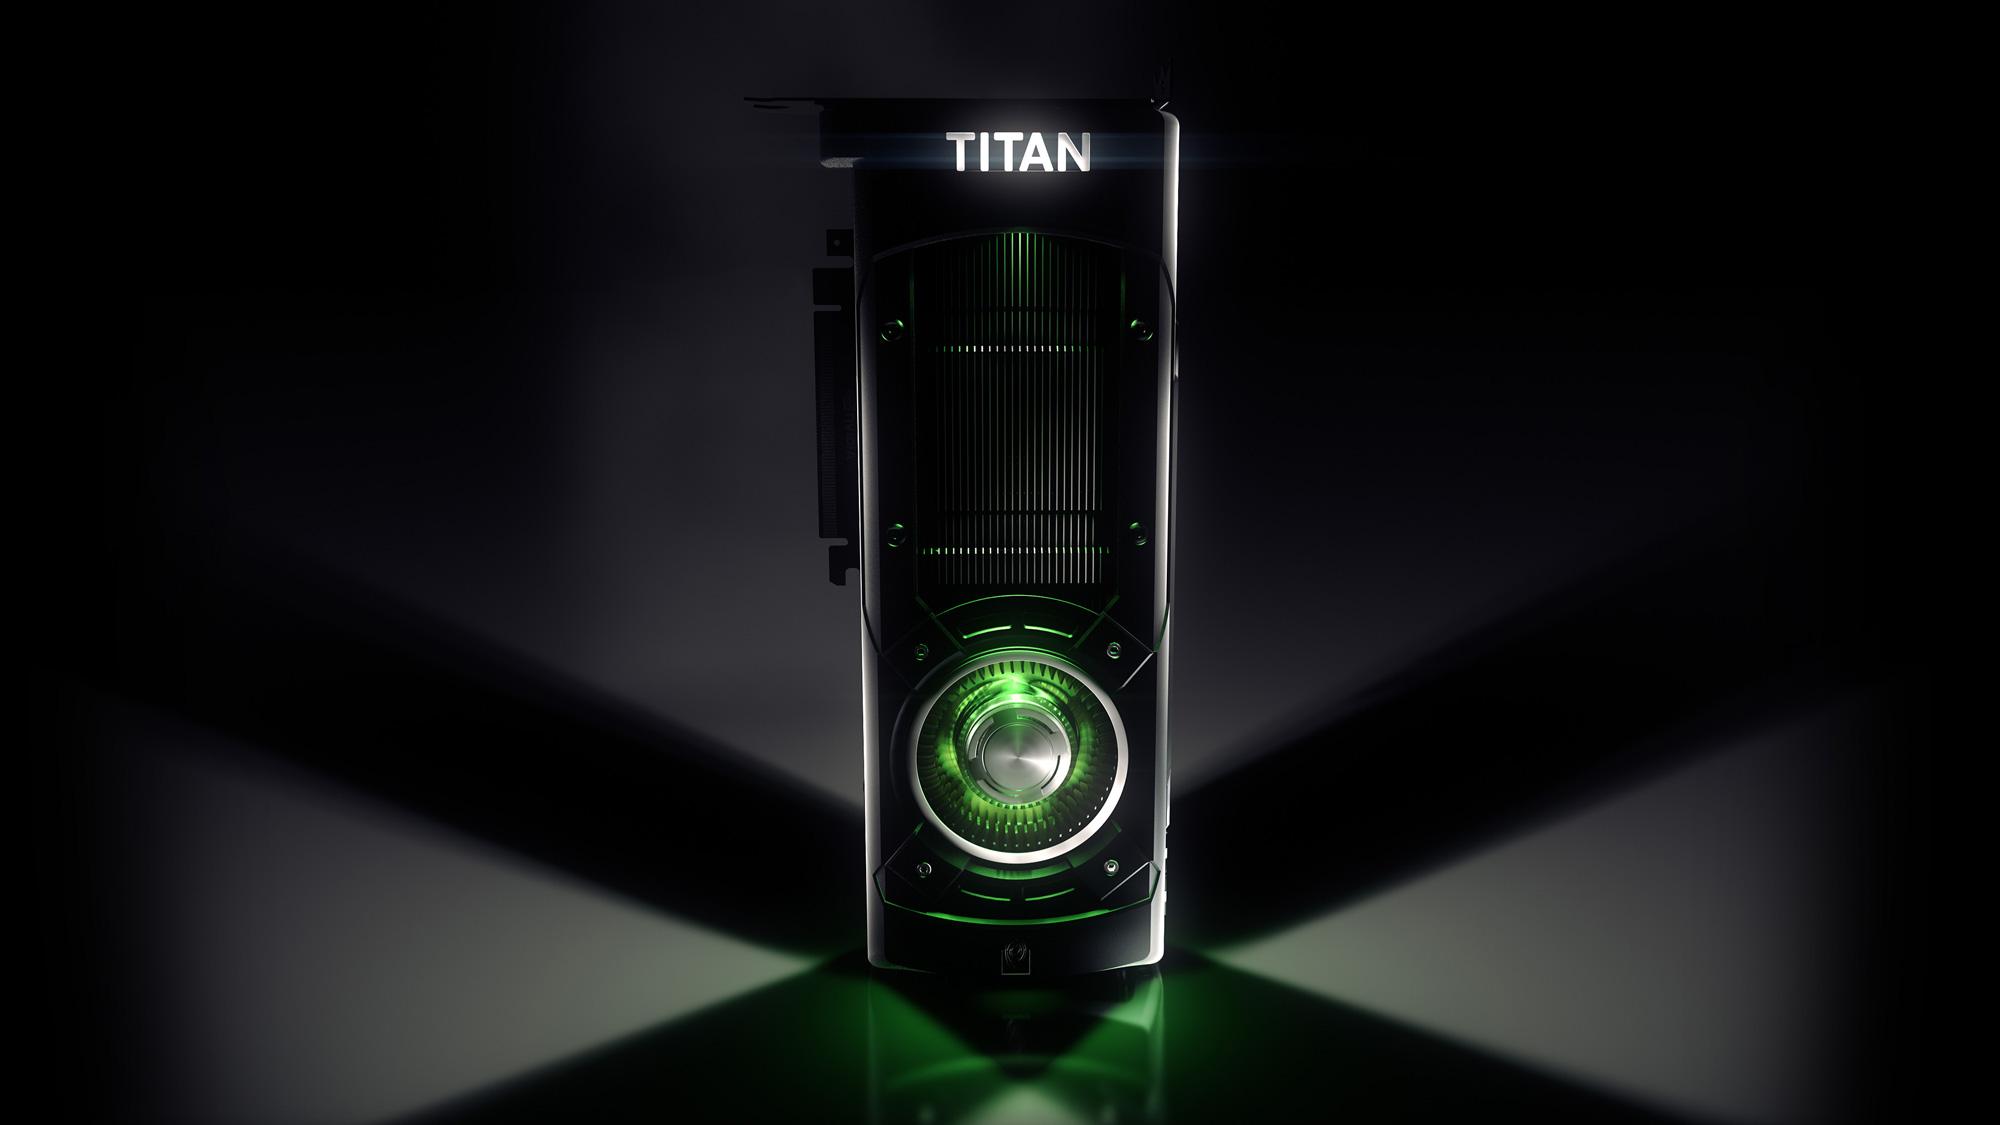 GeForce GTX TITAN X a mais poderosa do MUNDO!! 04164438551116